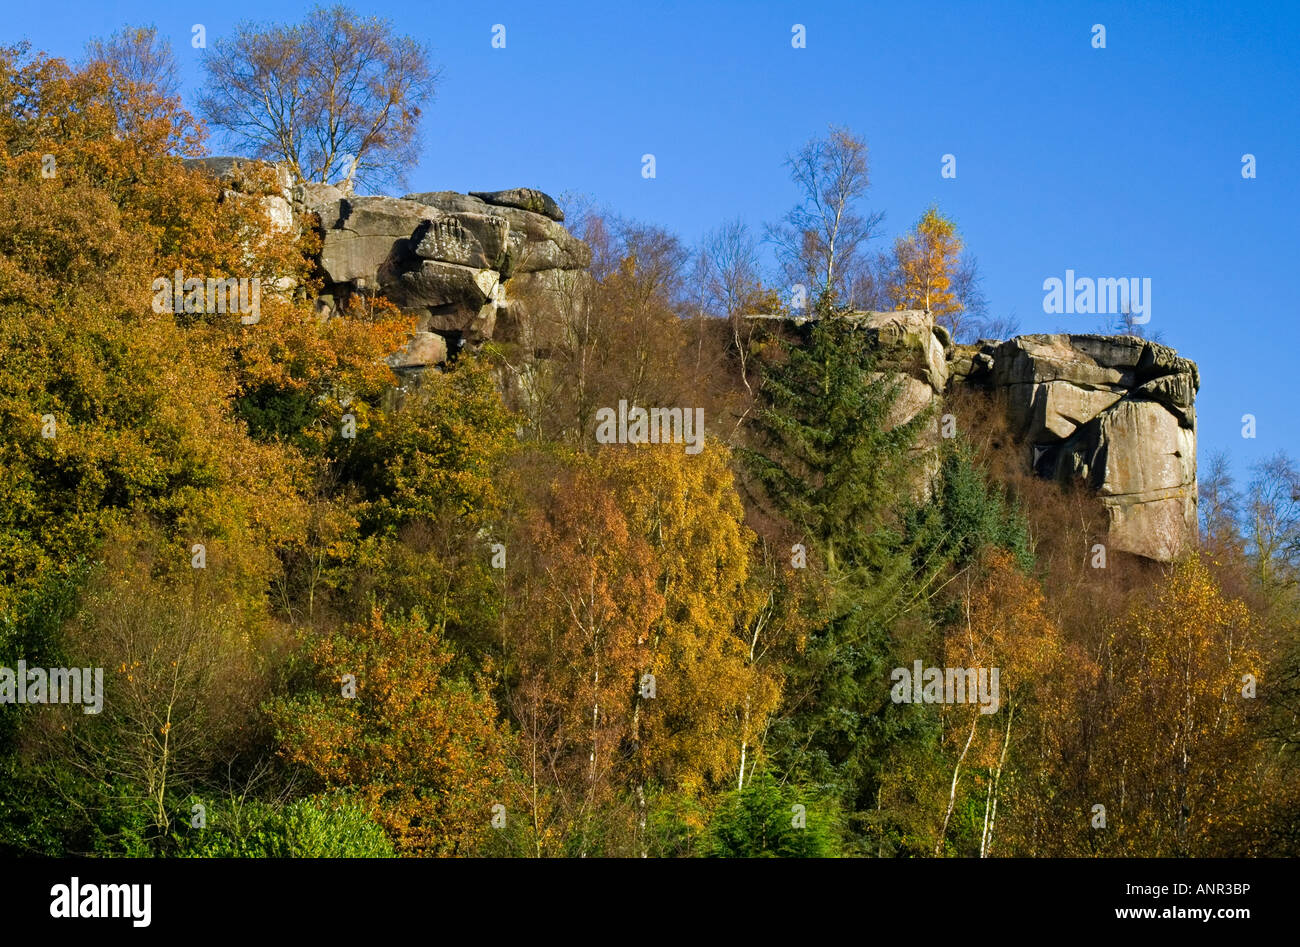 Rock formations à des rochers près de Cratcliffe Birchover dans le parc national de Peak District Derbyshire, Angleterre, Royaume-Uni Banque D'Images